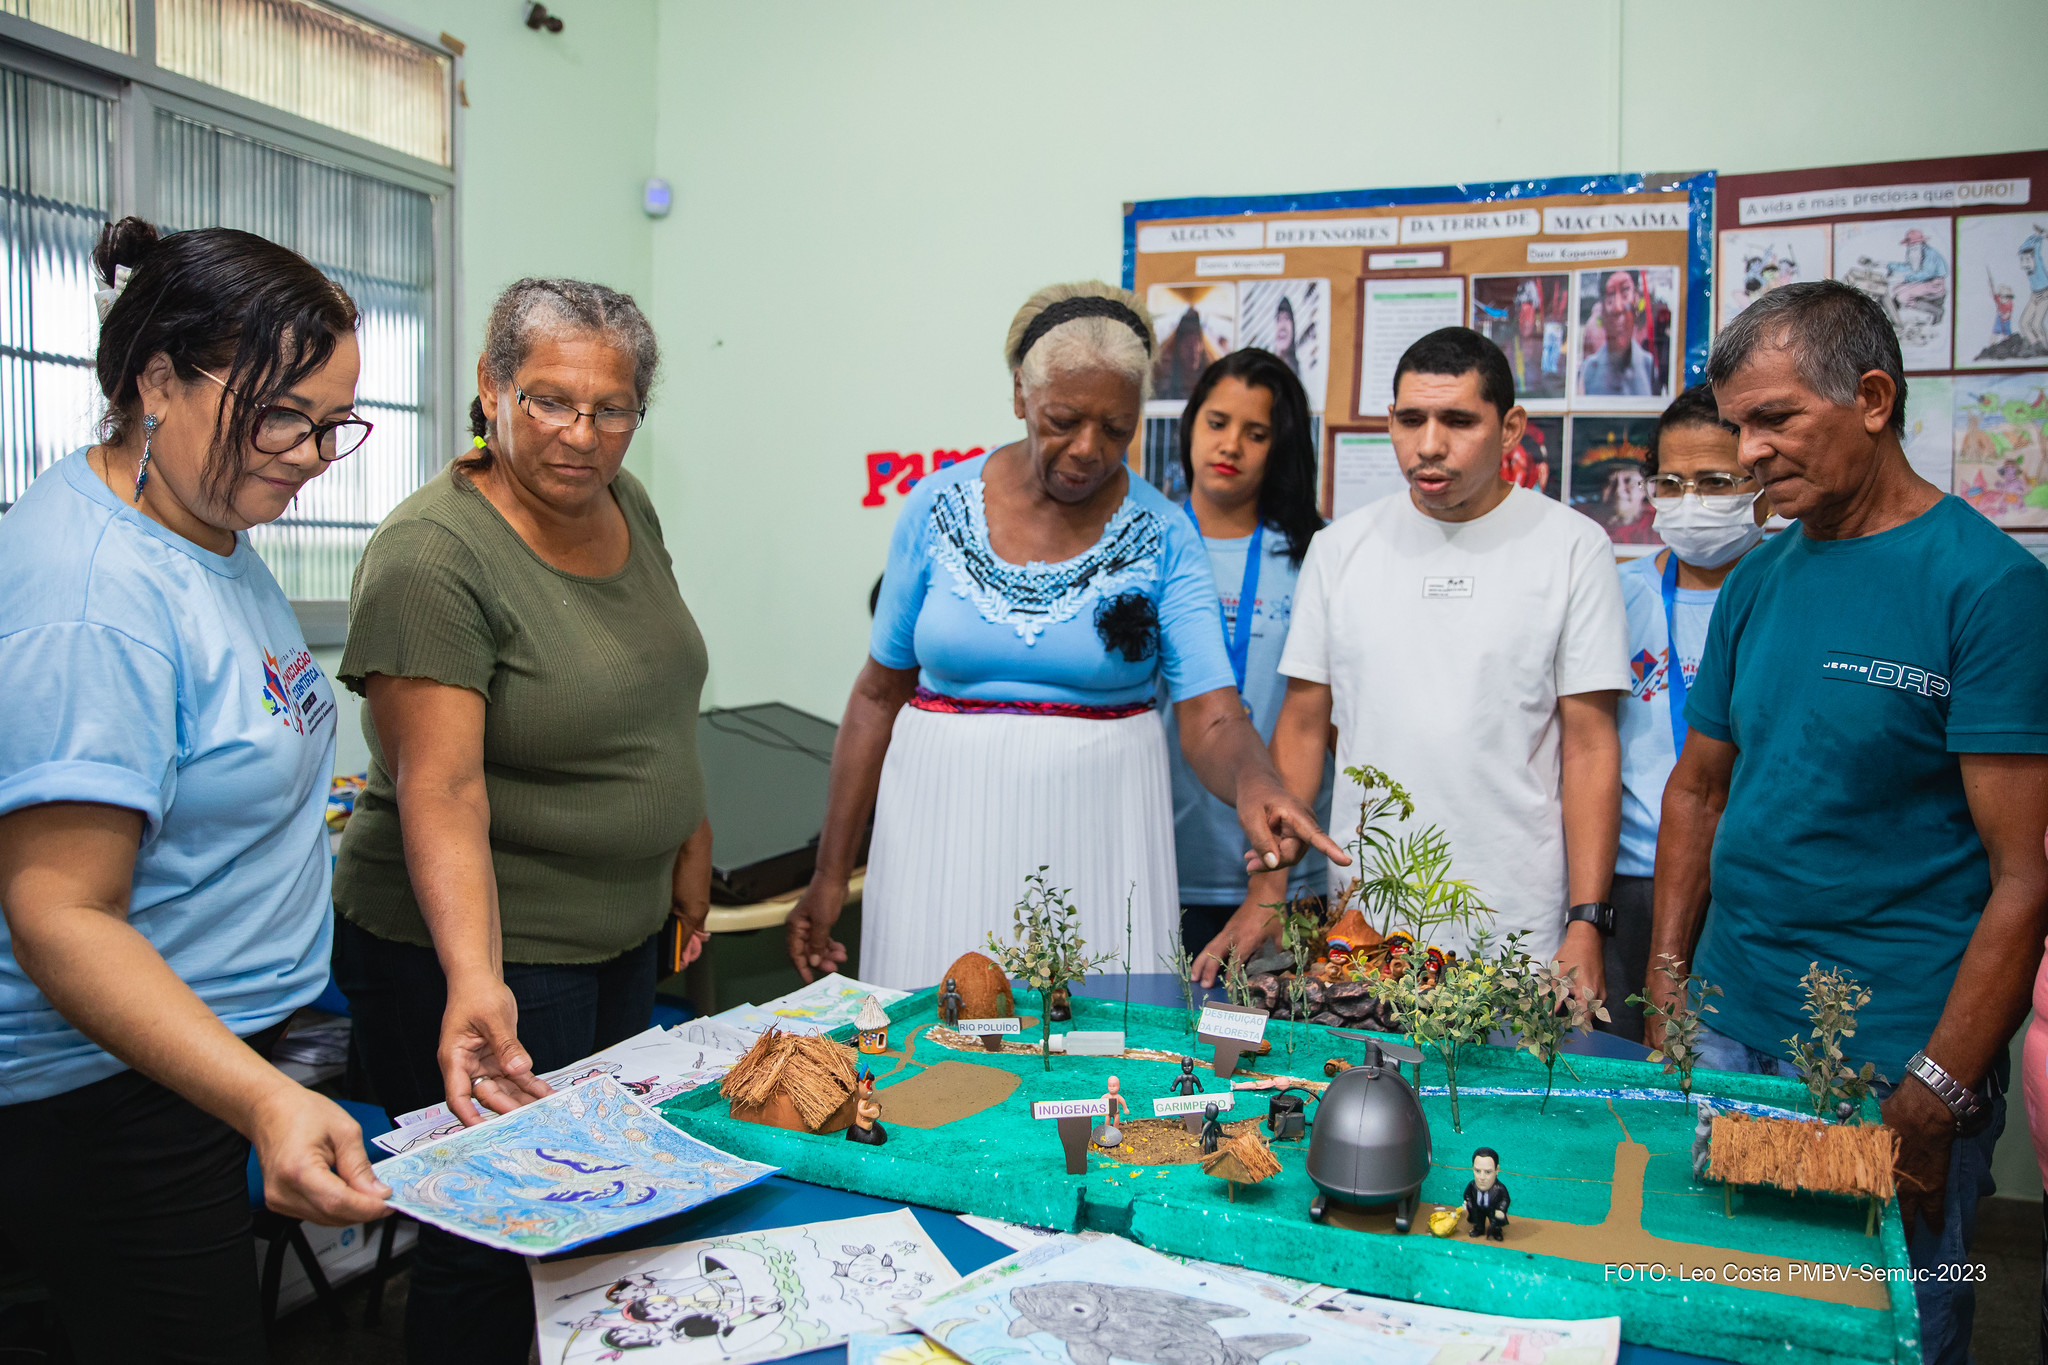 CUIDAR E PRESERVAR – Alunos da EJA desenvolvem projeto ambiental e estão entre os 10 vencedores do Prêmio Territórios